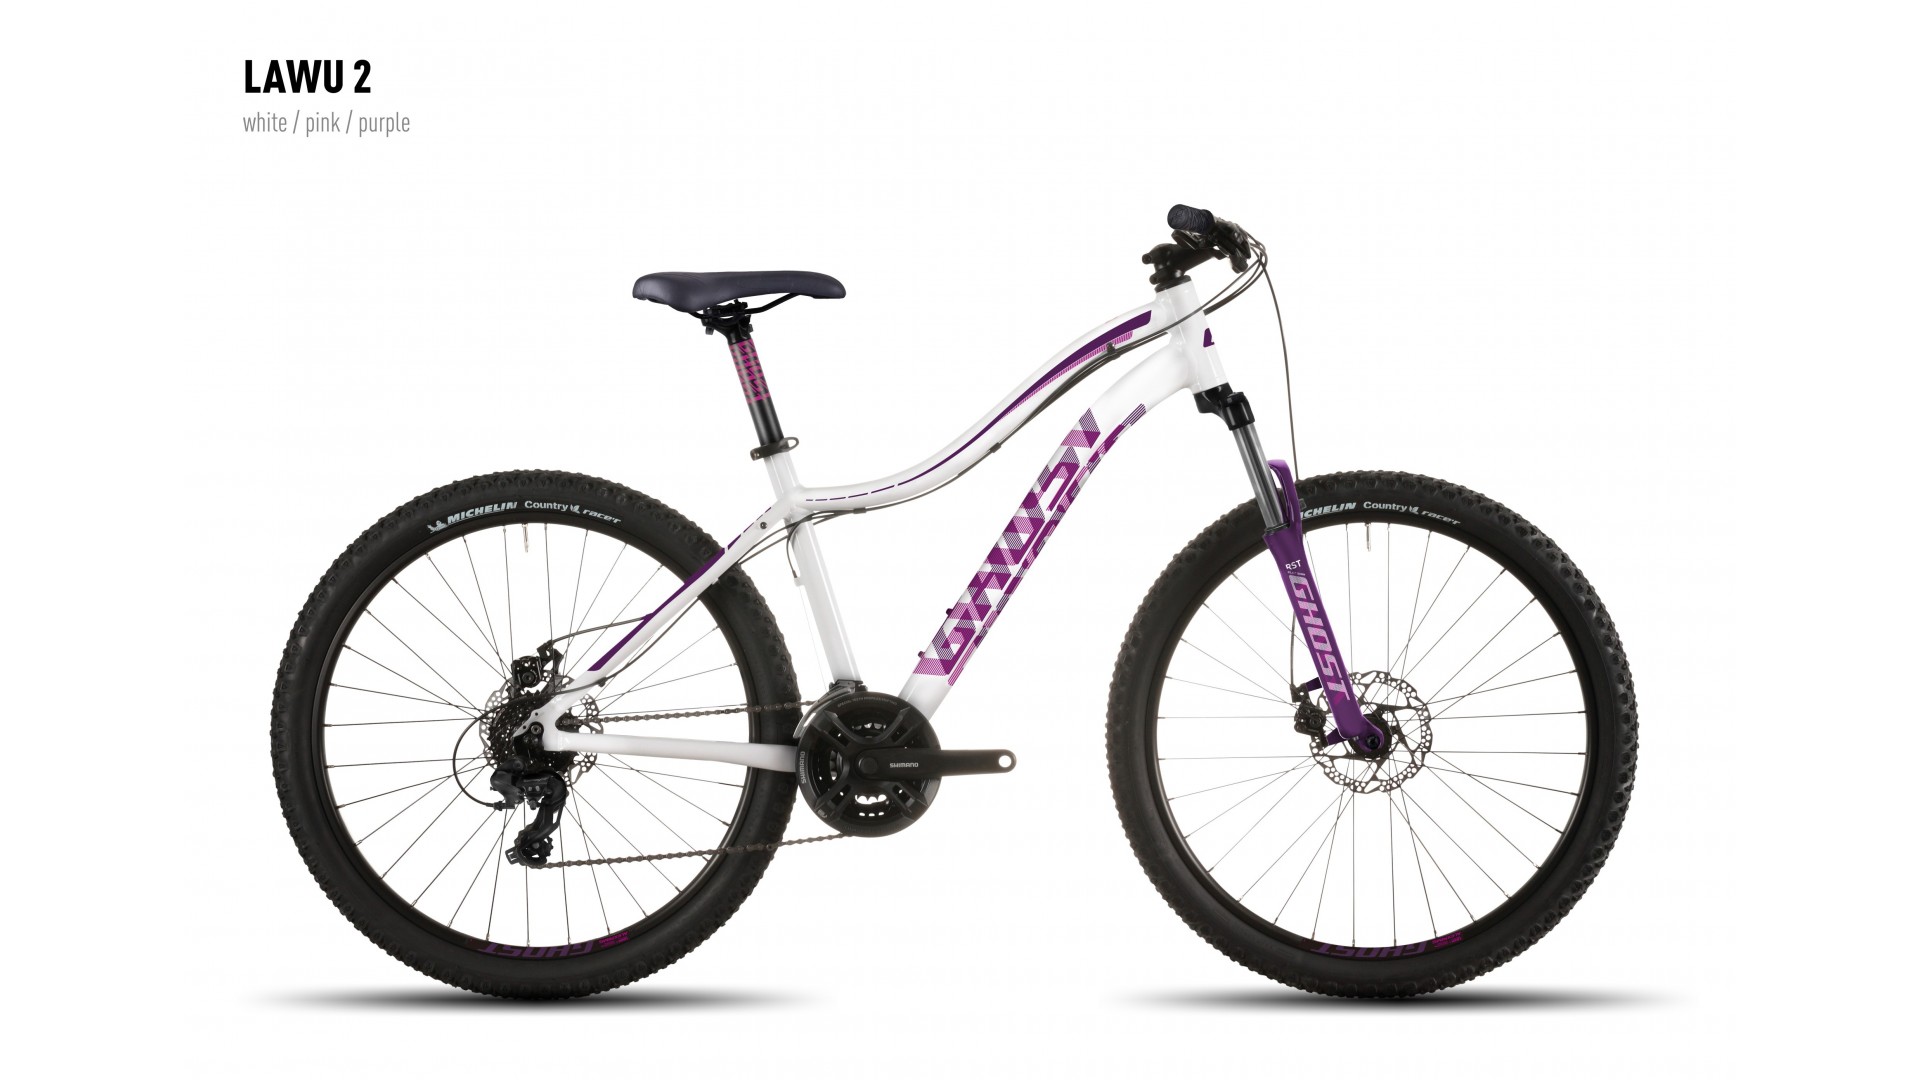 Велосипед GHOST Lawu 2 white/pink/purple год 2016